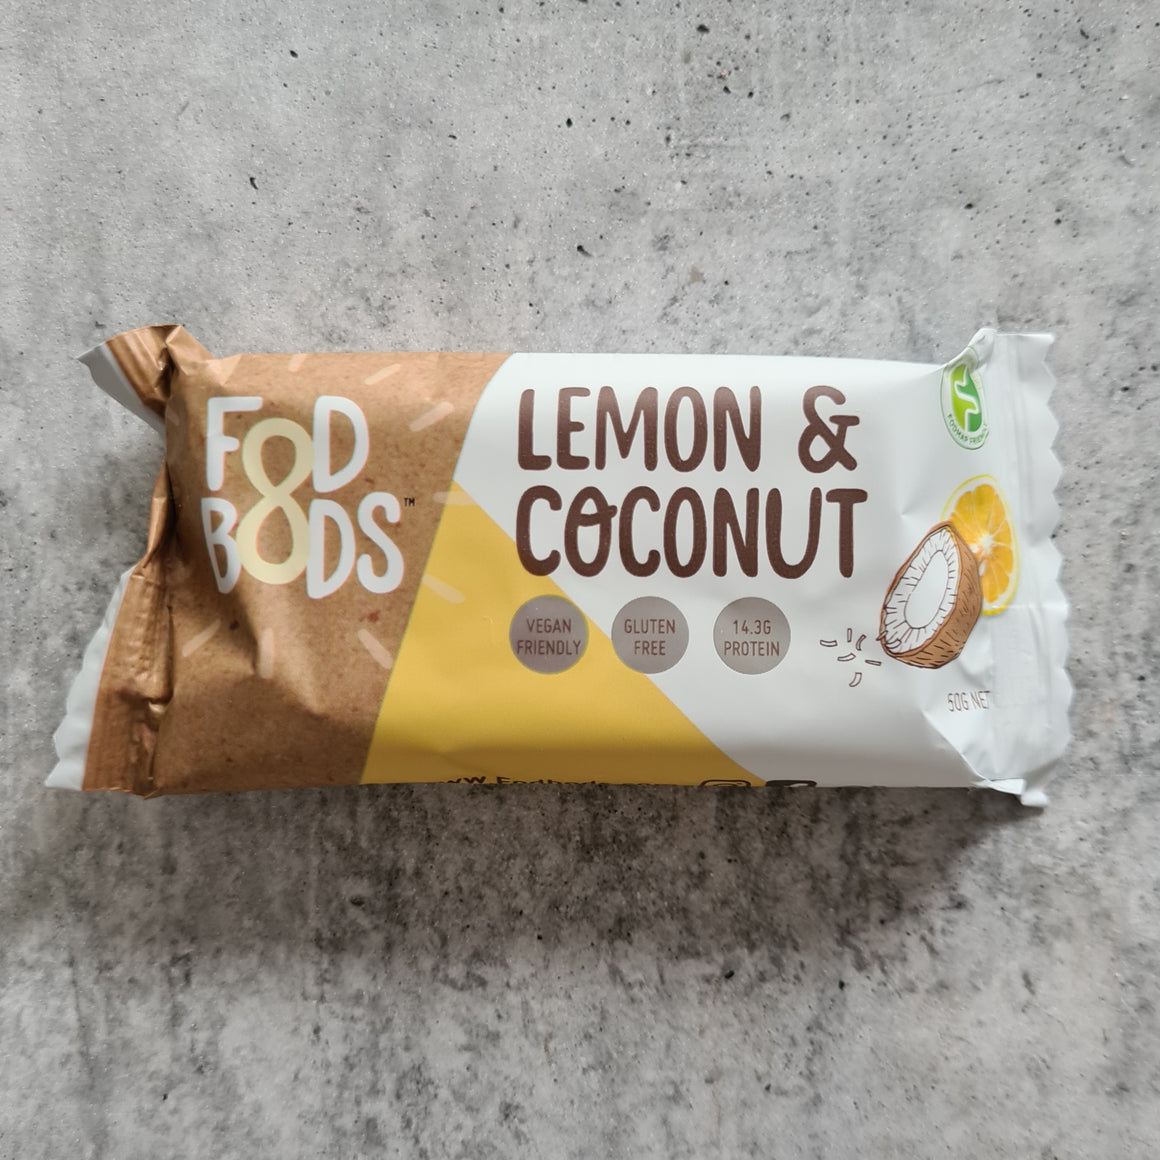 Fodbods - Lemon Coconut Bar (50g) - Foddies